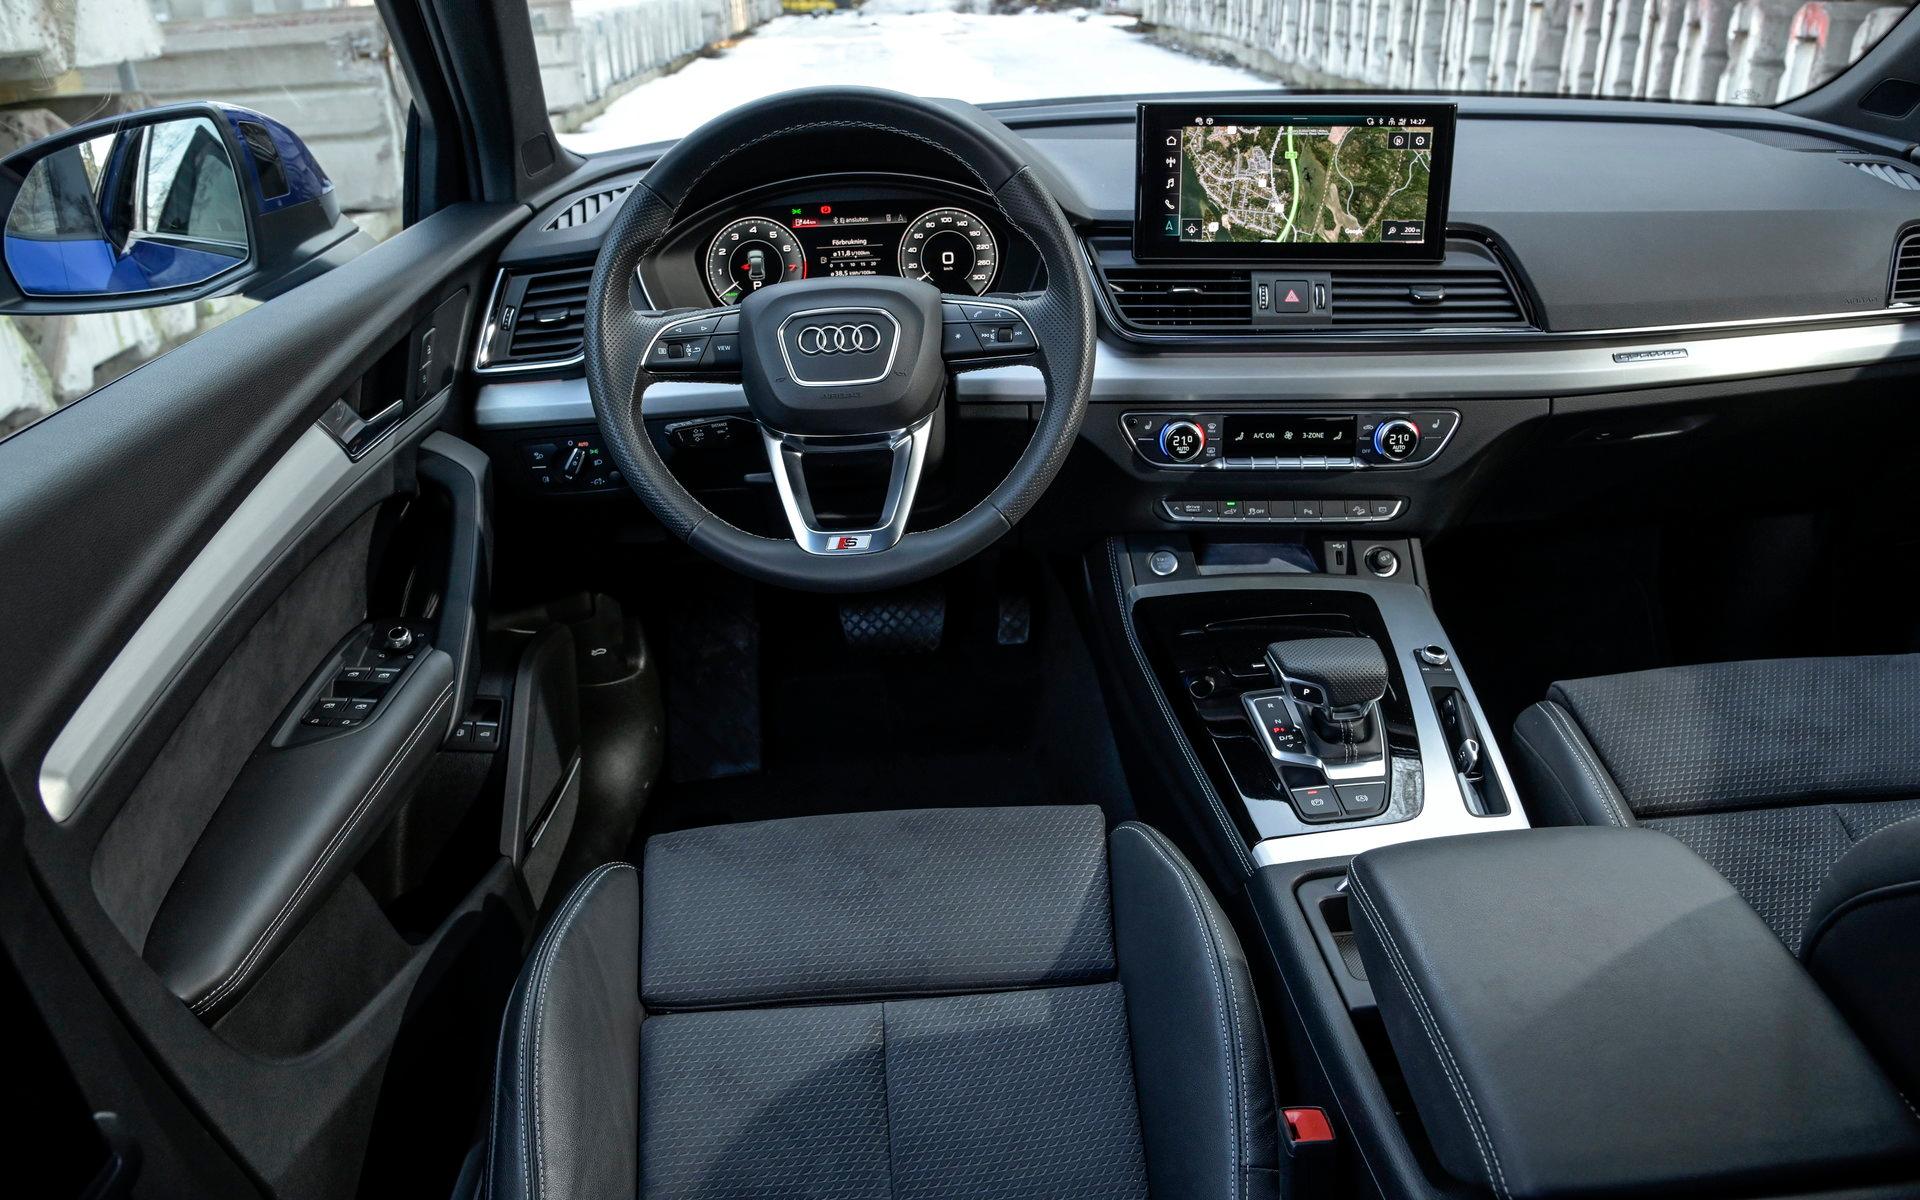 Interiören känns igen – Audi in i minsta detalj. Kvalitetskänslan är hög, liksom prislappen.